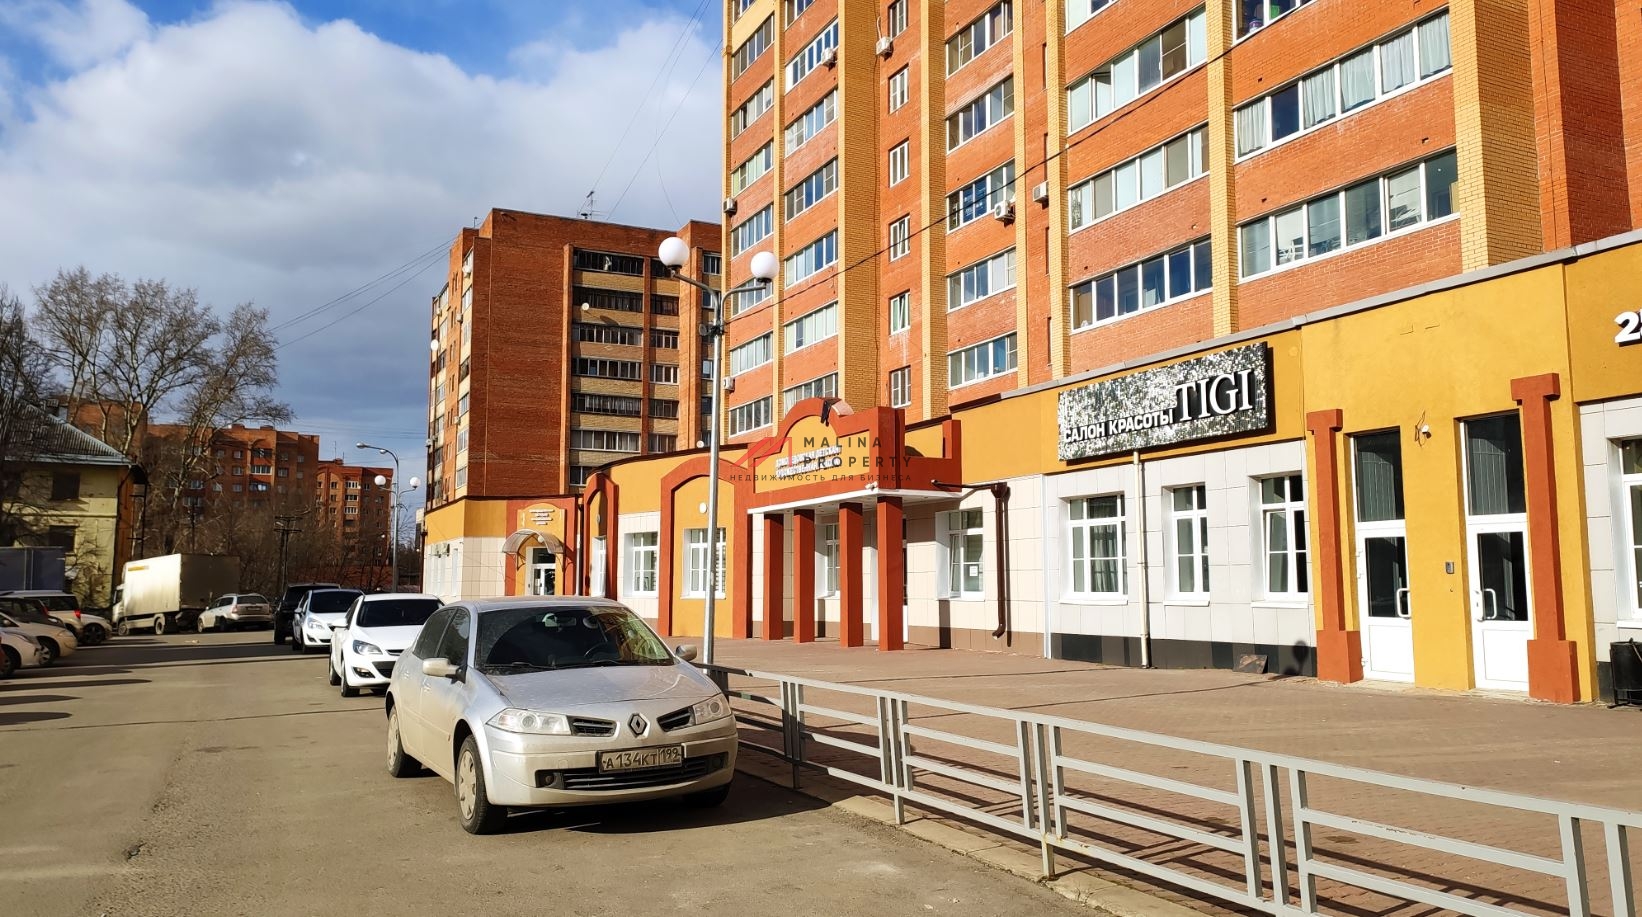 Продажа торгового помещения в г. Домодедово